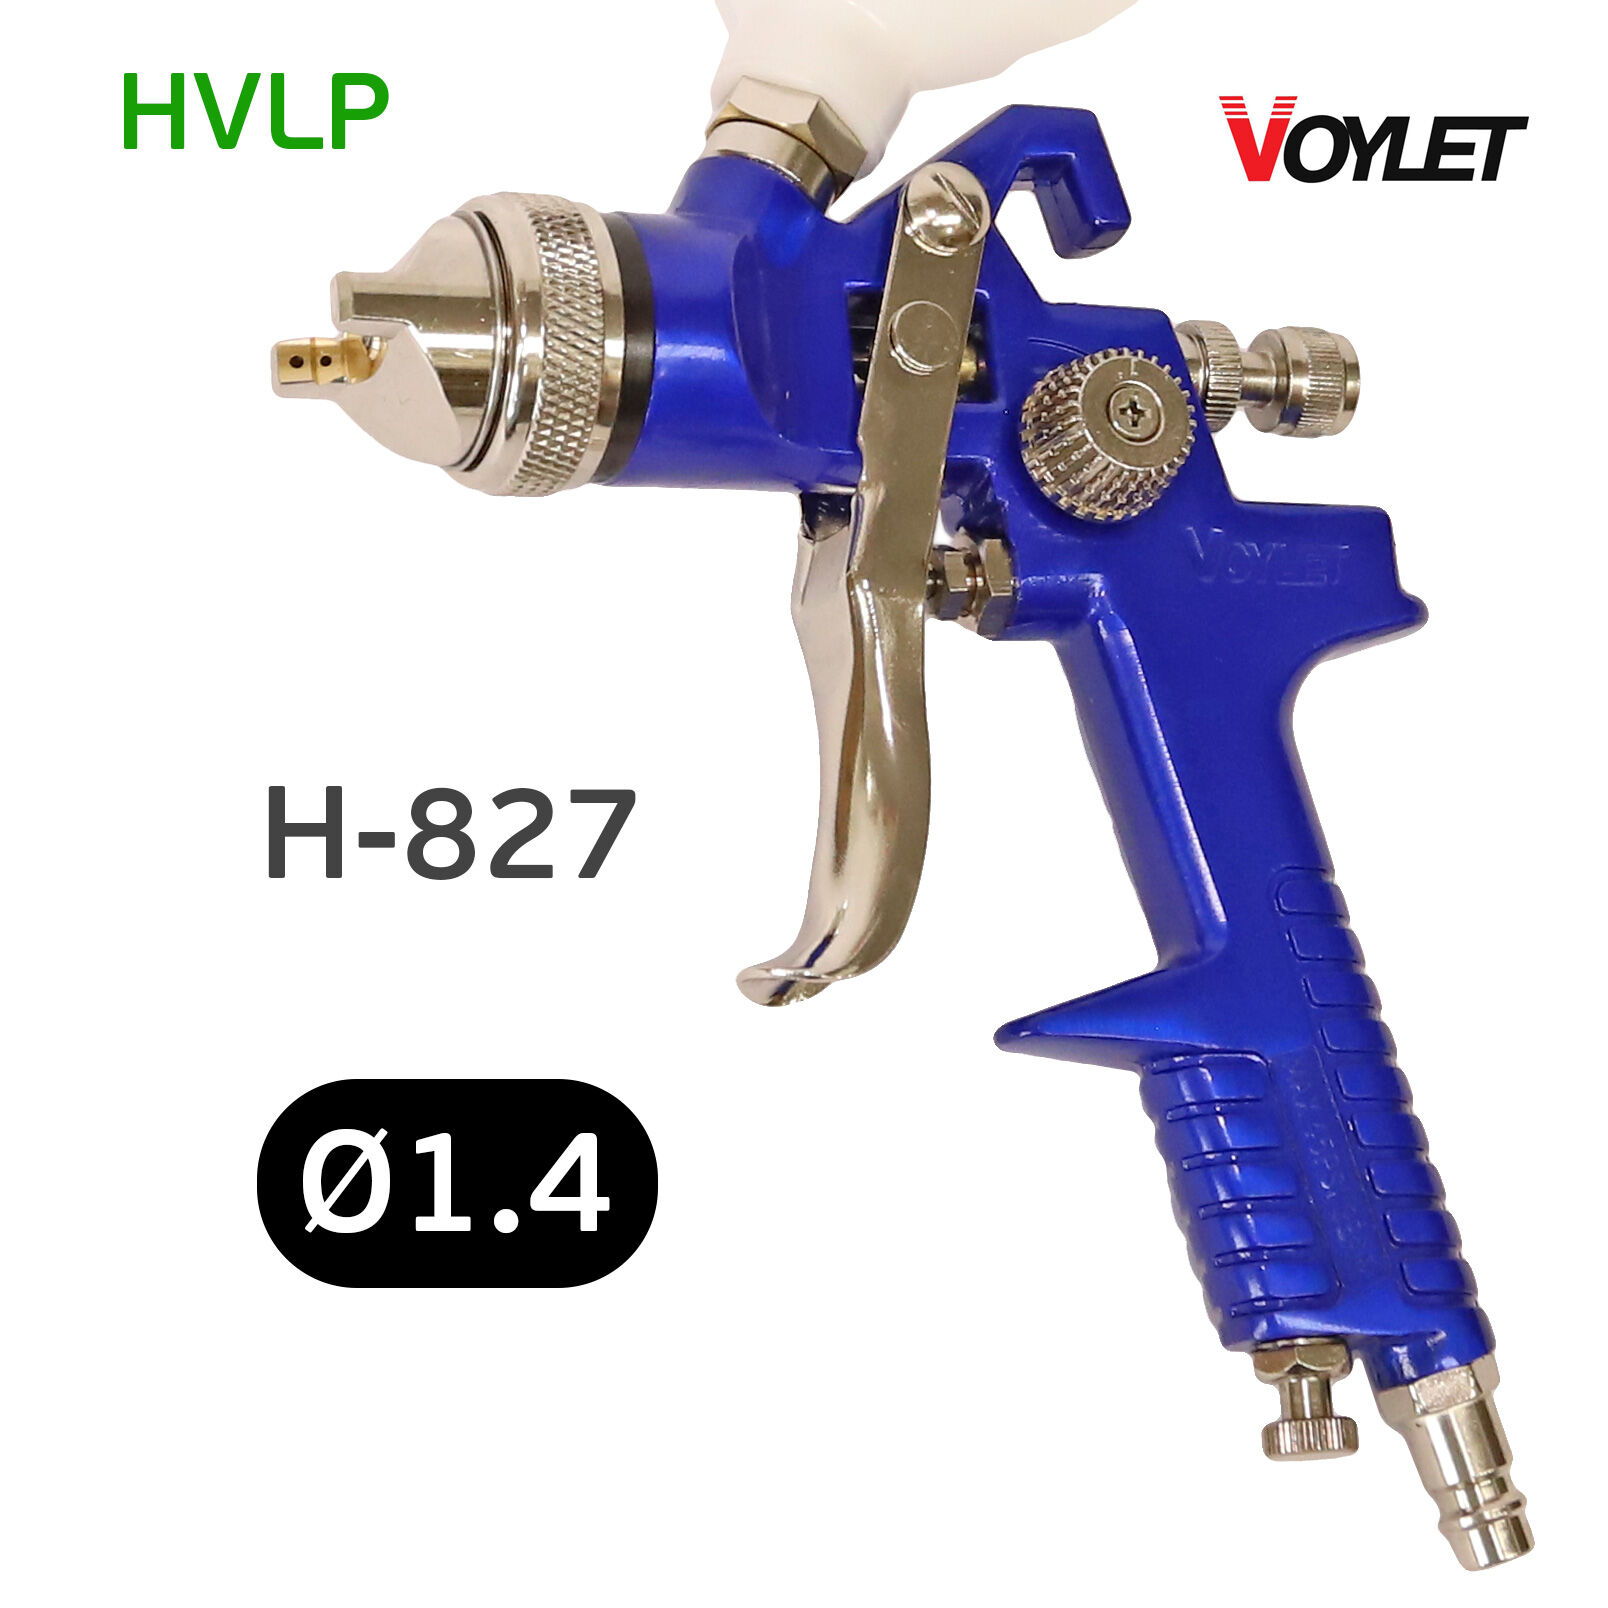 Краскопульт Voylet H-827 HVLP 1,4мм универсальный, верхний бачок